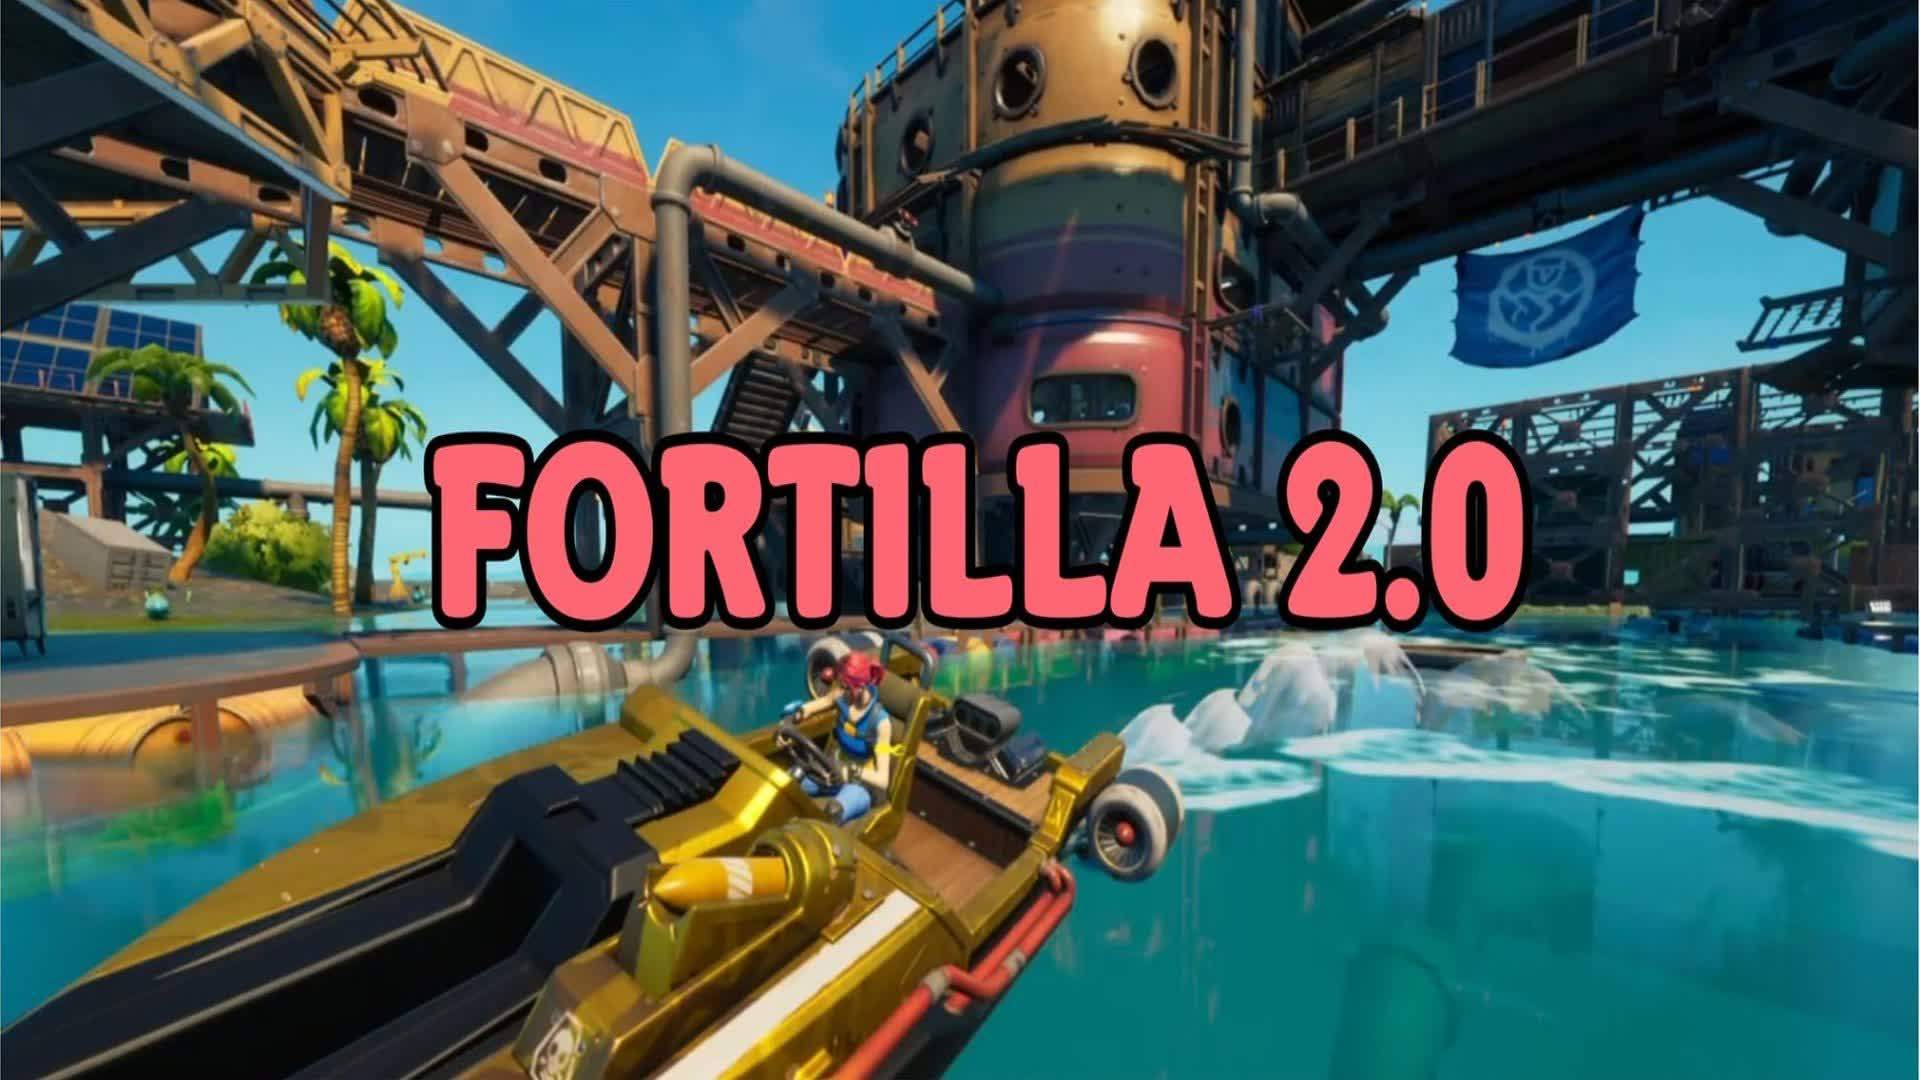 Fortilla 2.0